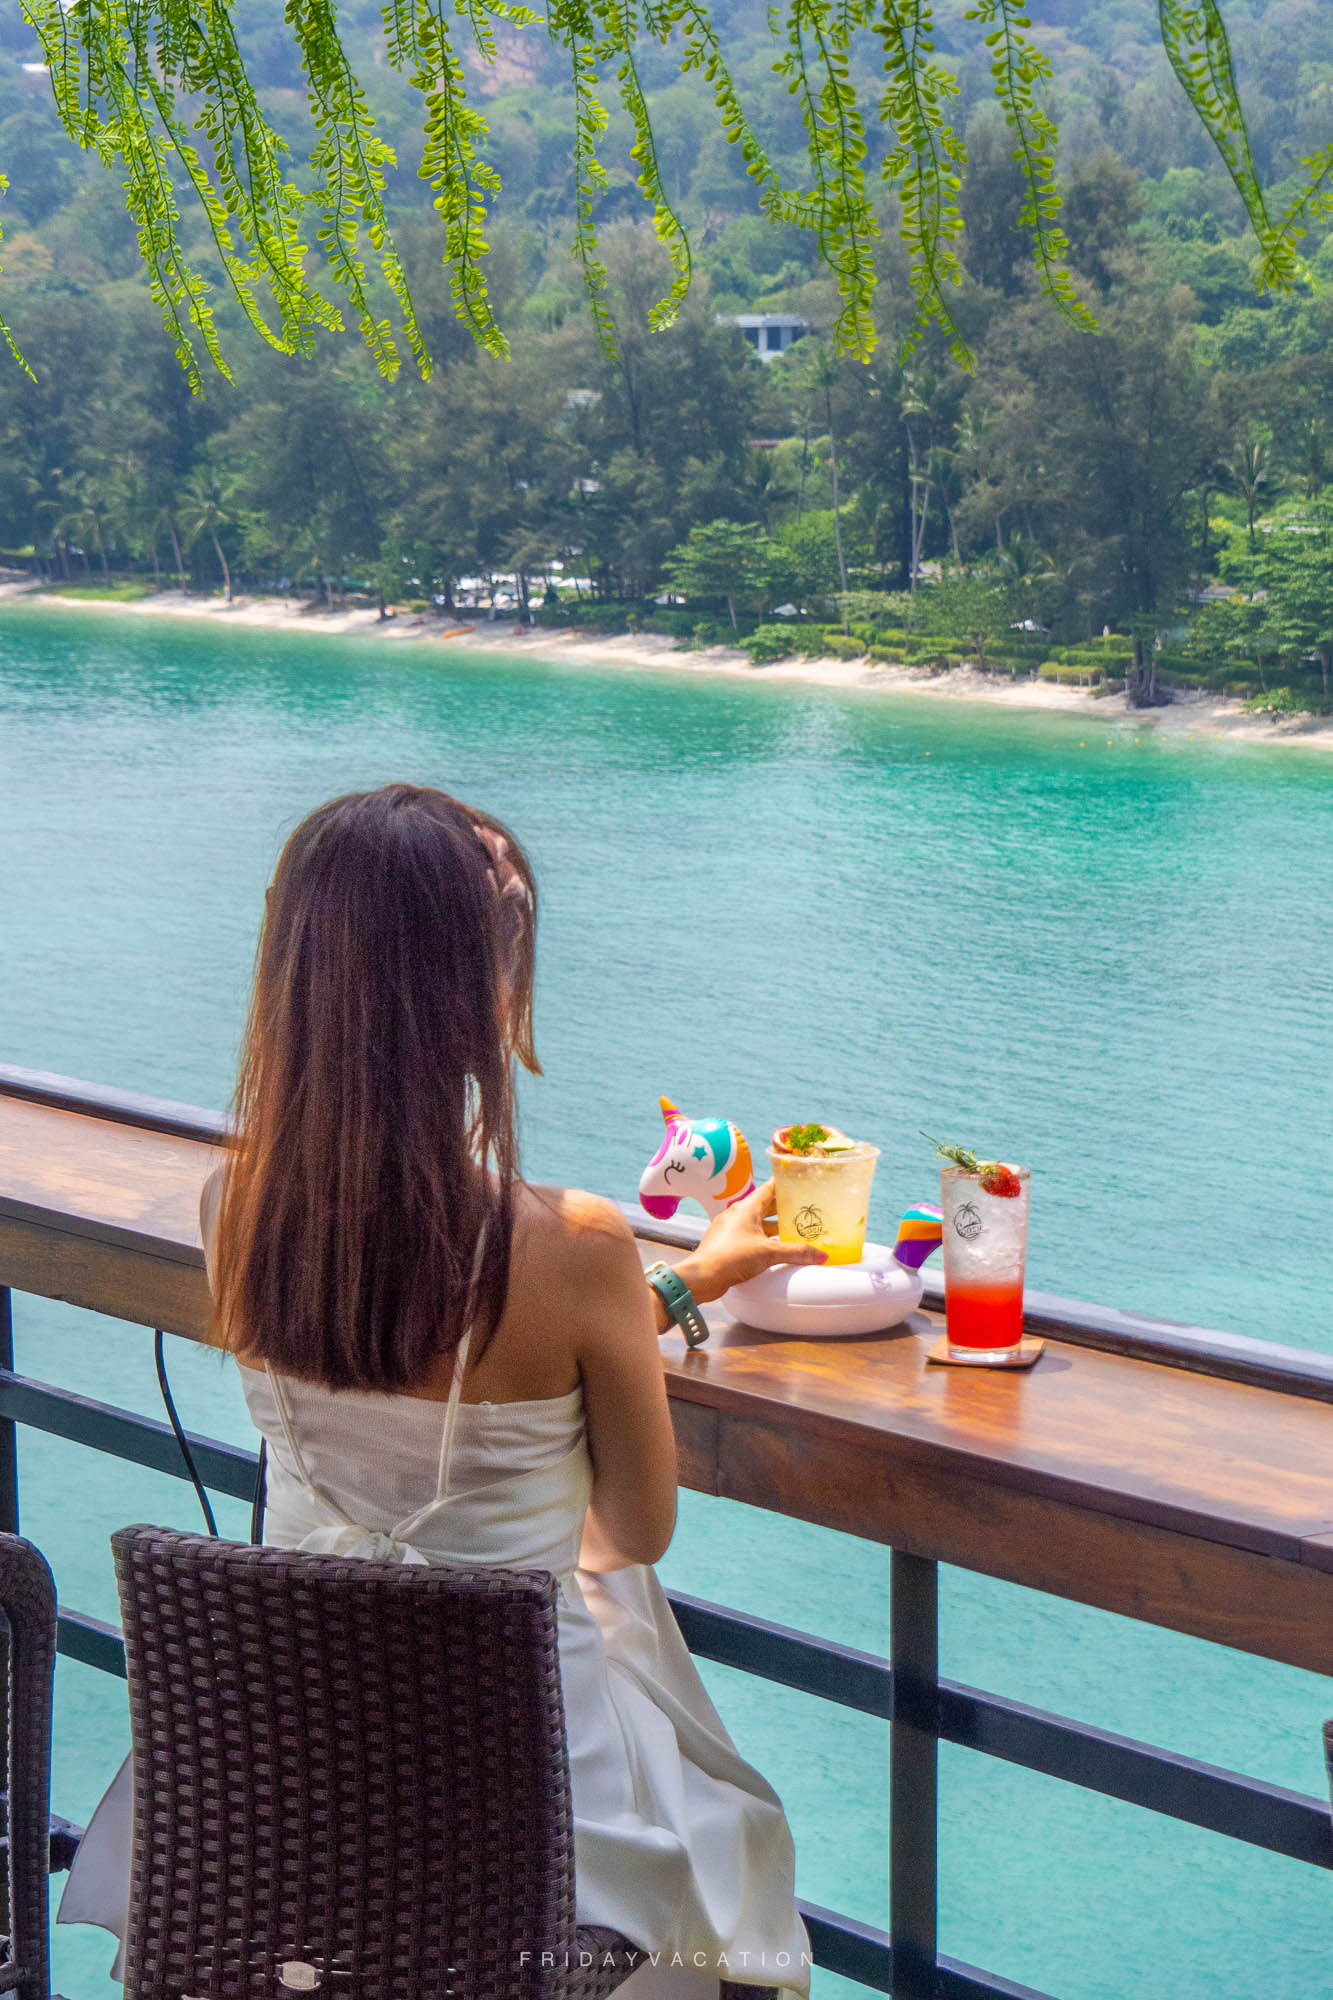 The Cozy Cafe Phuket คาเฟ่ใหม่ ริมทะเลภูเก็ต โซนหาดไตรตรัง วิวทะเลสวยมาก มุมถ่ายรูปสวยๆเพียบเลย